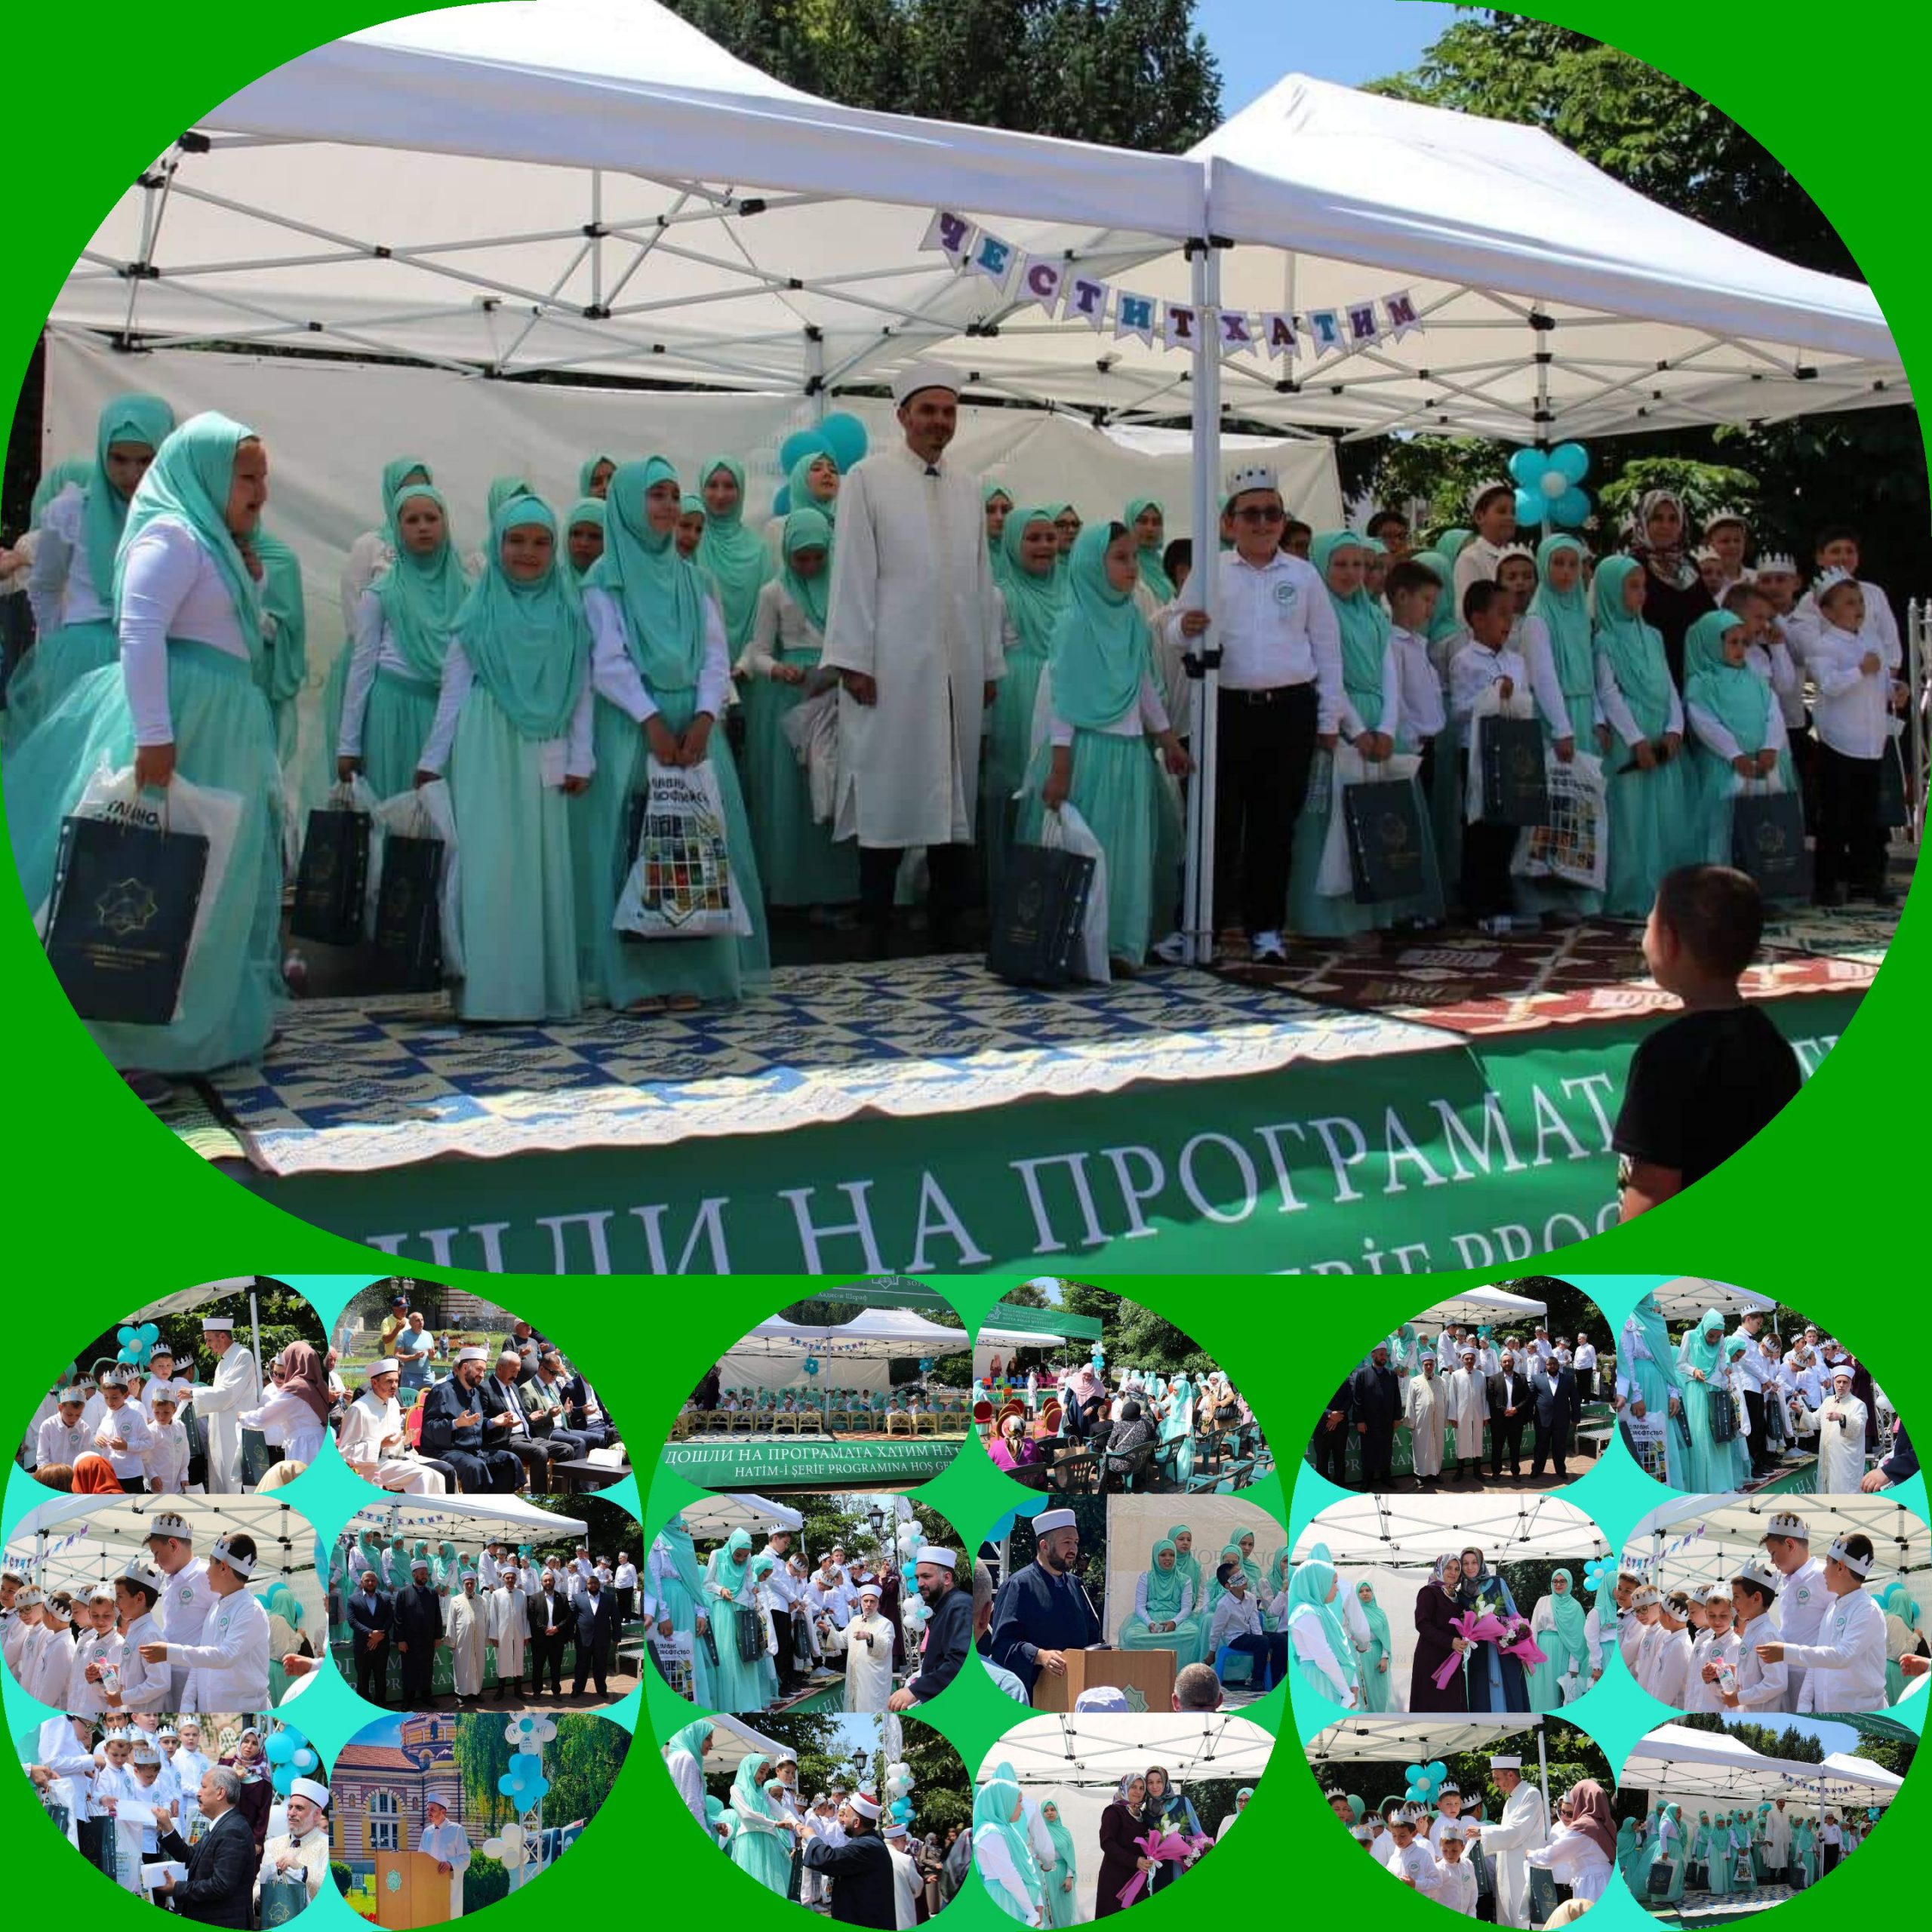 احتفالية "الختمة القرآنية" تأتي في نهاية حصاد لعام كامل من التدريس في حلقات تعليم وتحفيظ القرآن الكريم لأطفال مسلمي صوفيا العاصمة.